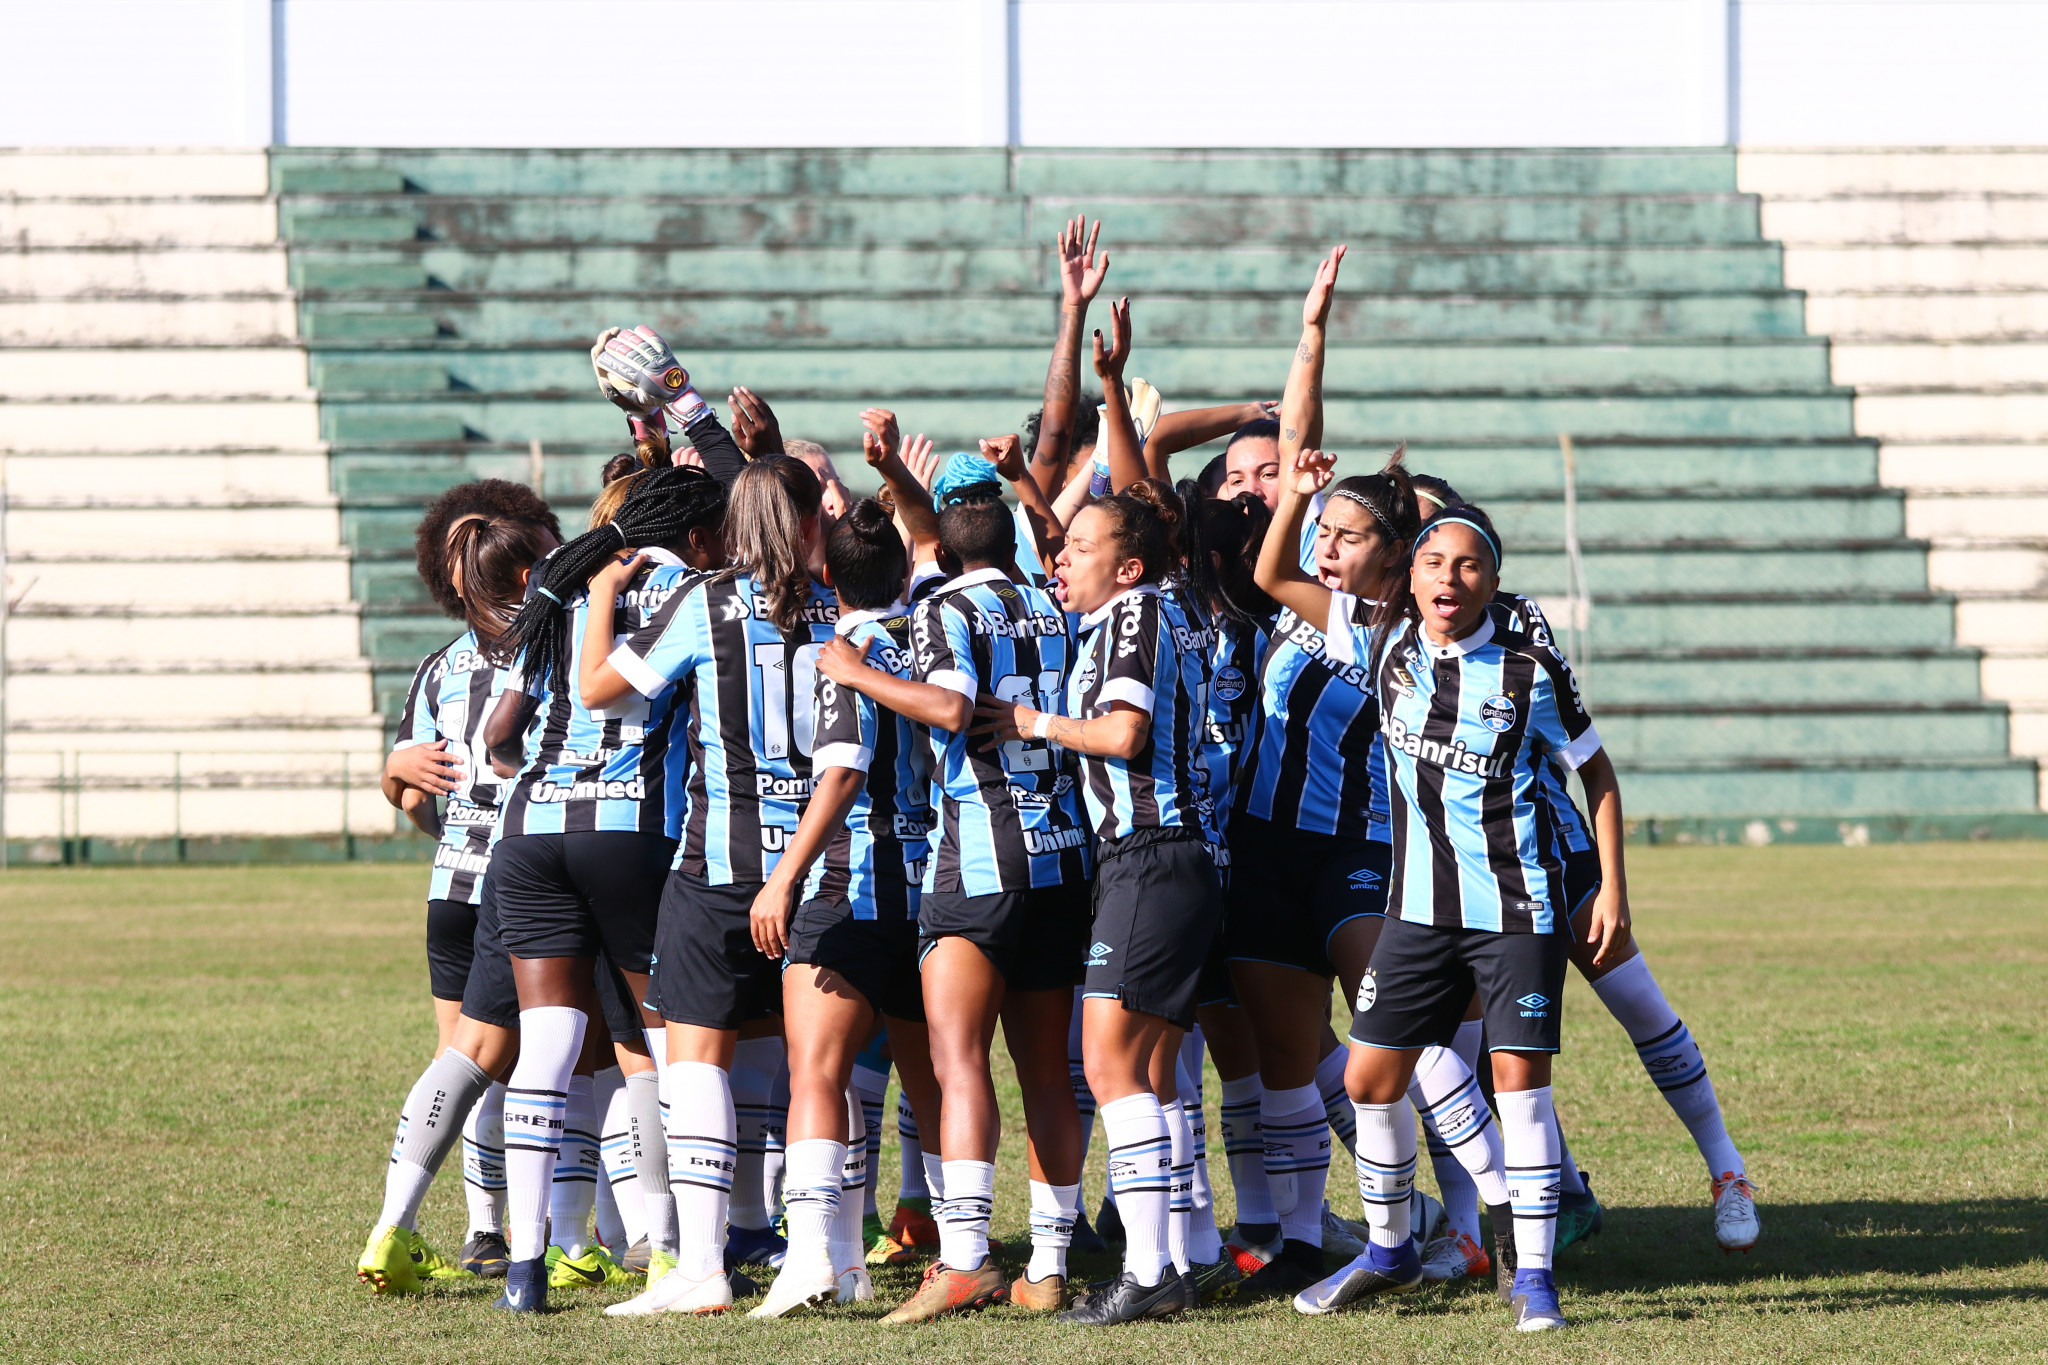 Campeonato Brasileiro de Futebol Feminino de 2022 - Série A2